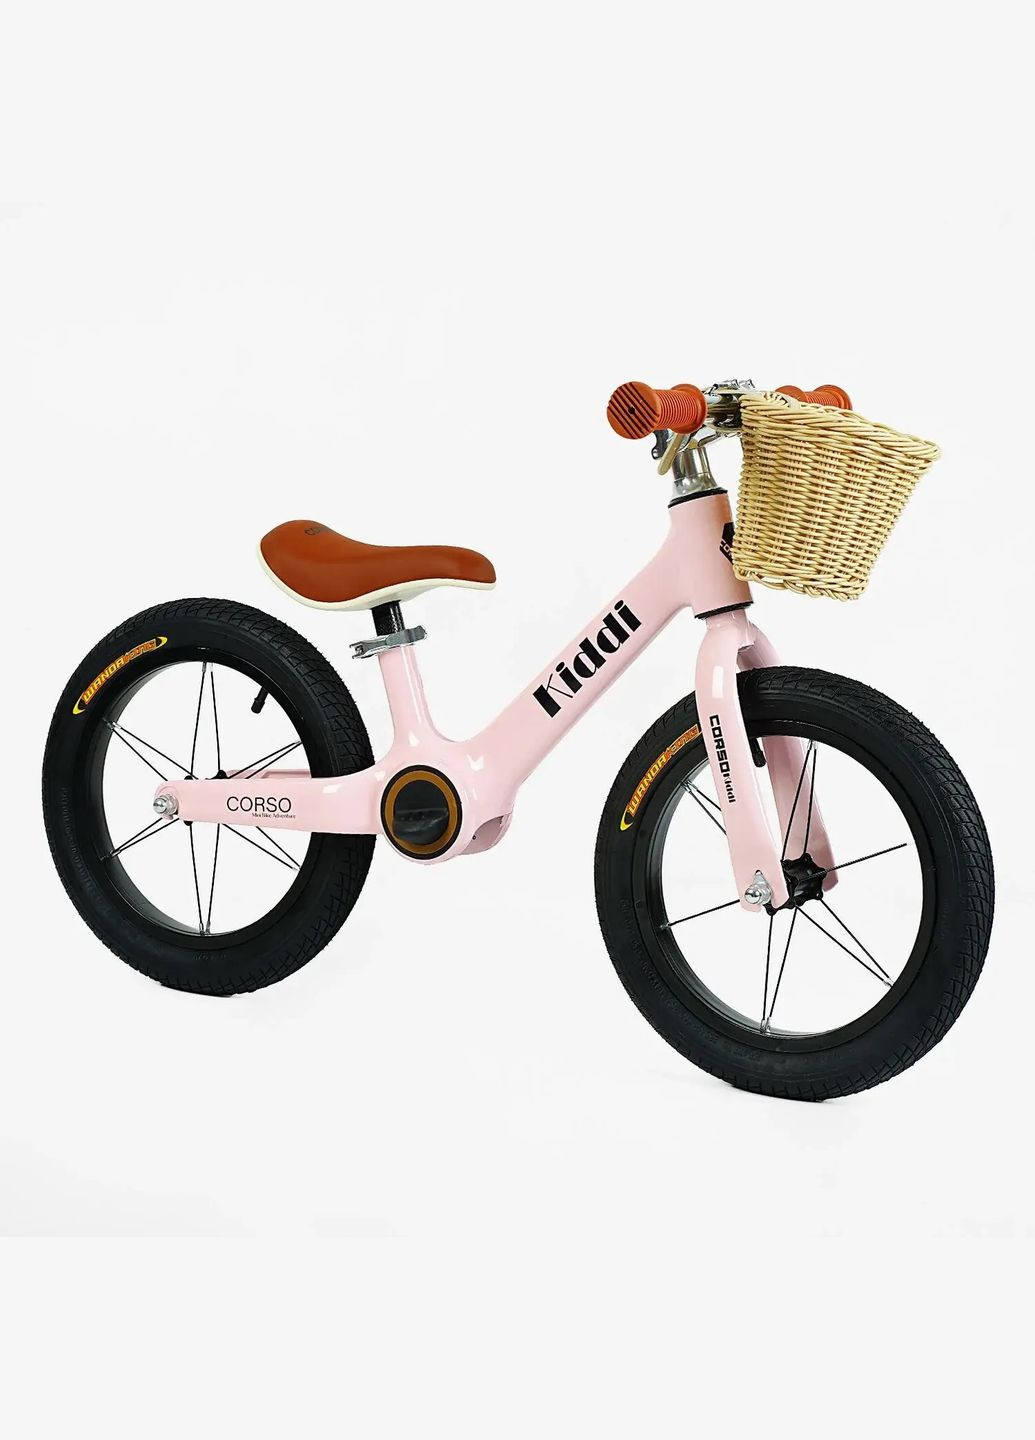 Дитячий велобіг KIDDI LT-14055. Магнієва рама, надувні колеса 14", підставка для ніг, кошик Corso (290254822)